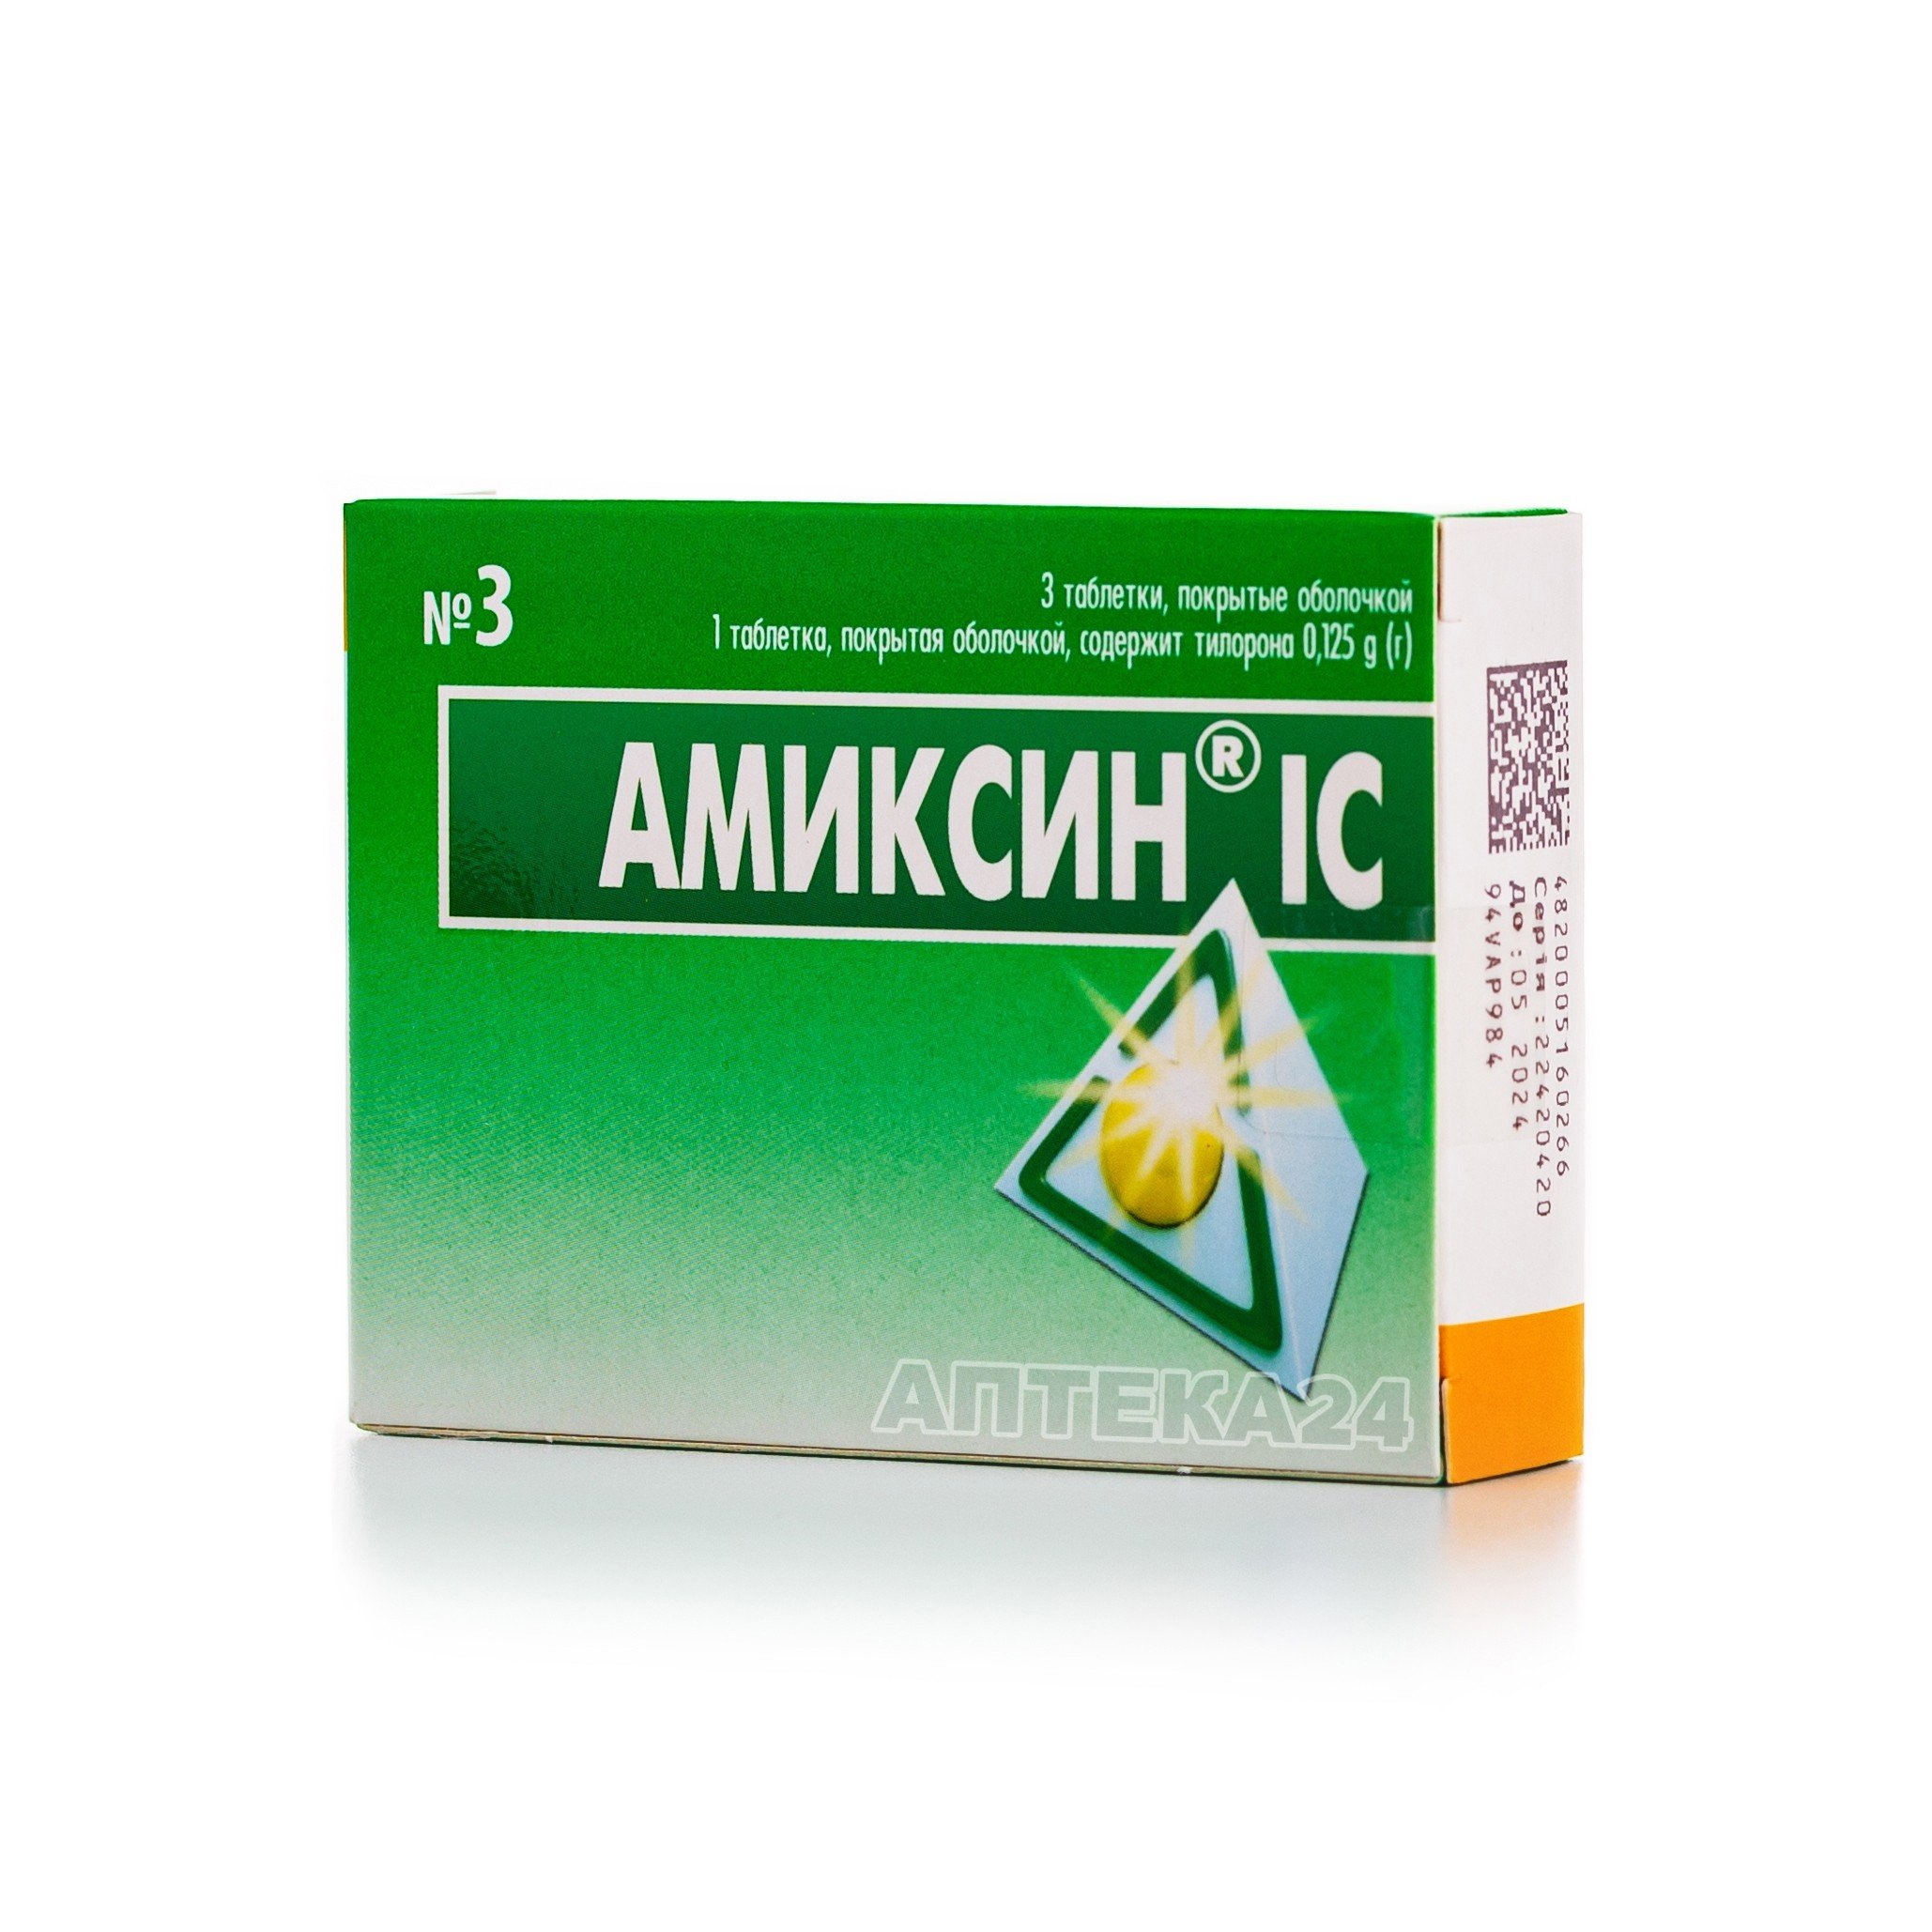 Аміксин® IC таблетки по 0.125 г, 3 шт.: інструкція, ціна, відгуки .